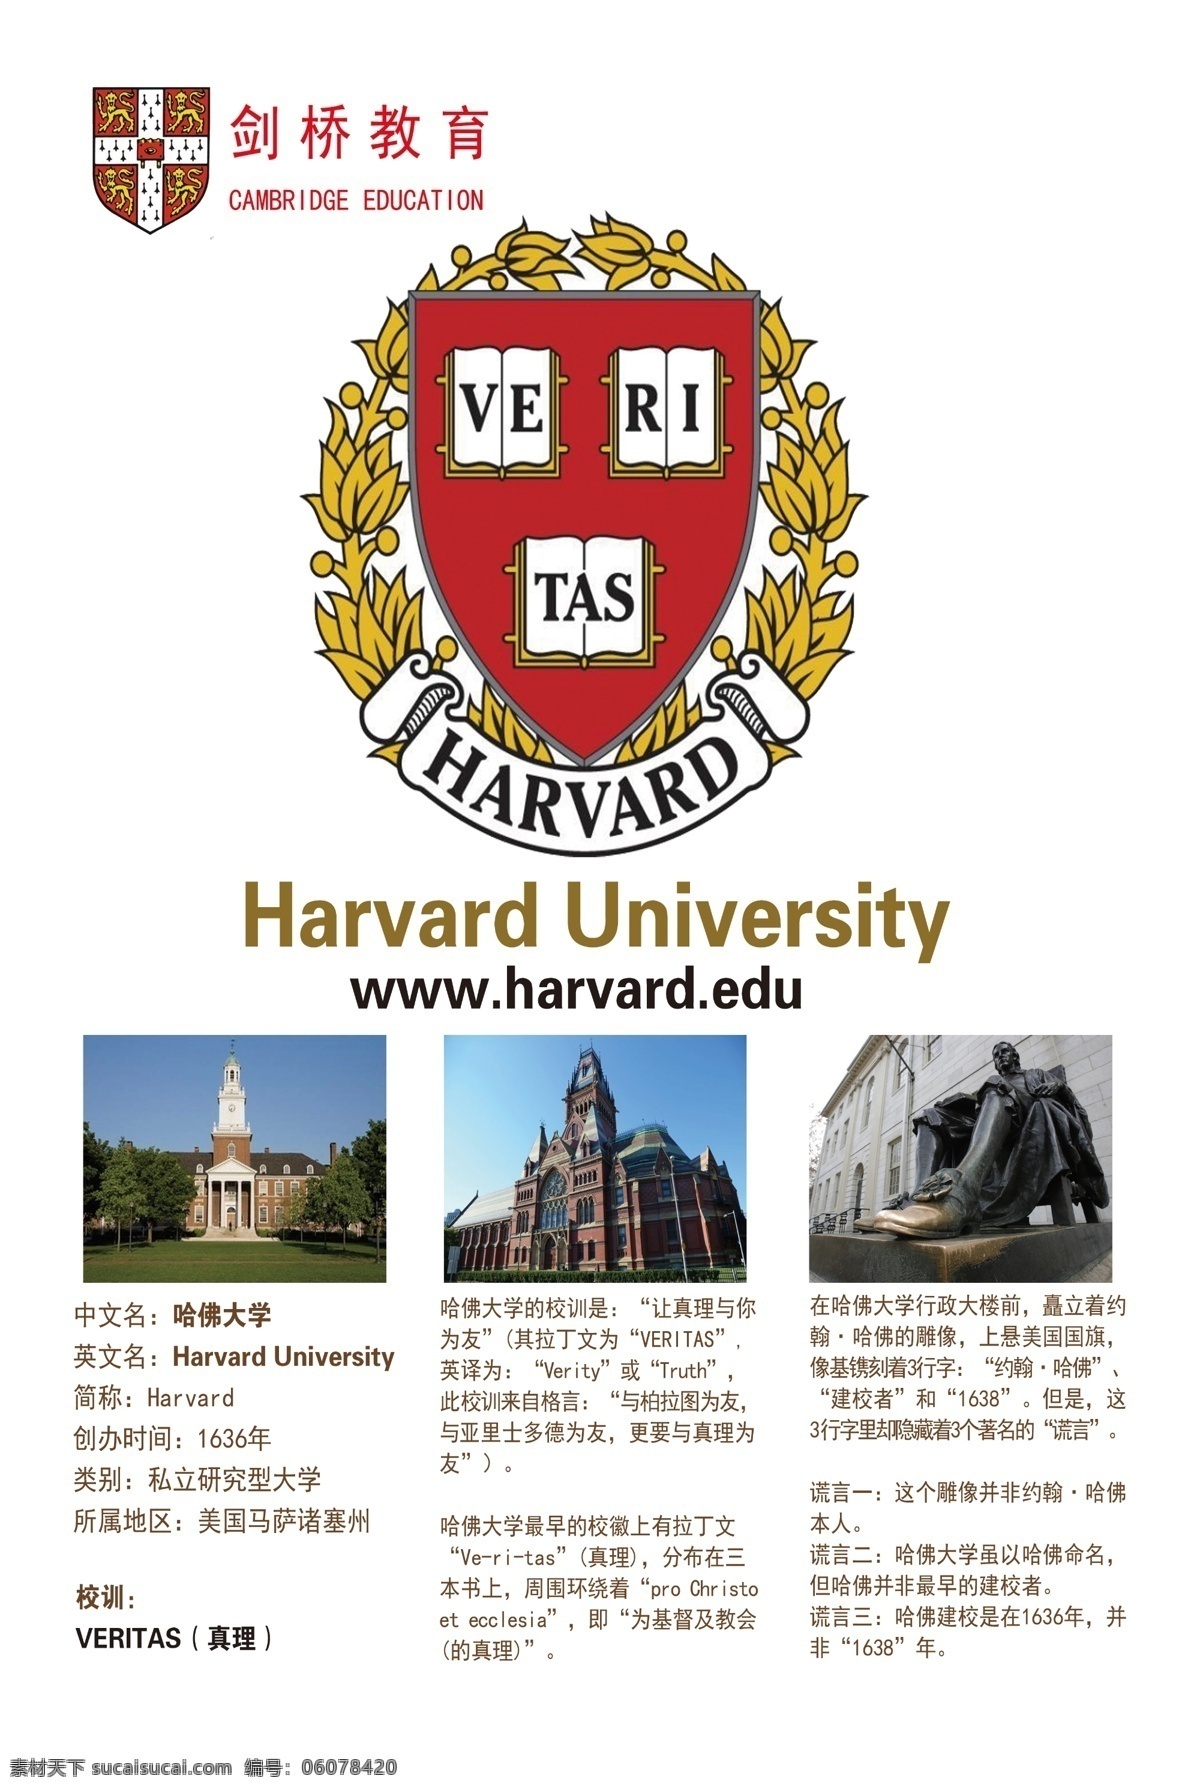 哈佛大学 剑桥英语 世界名校 剑桥教育 大学 分层